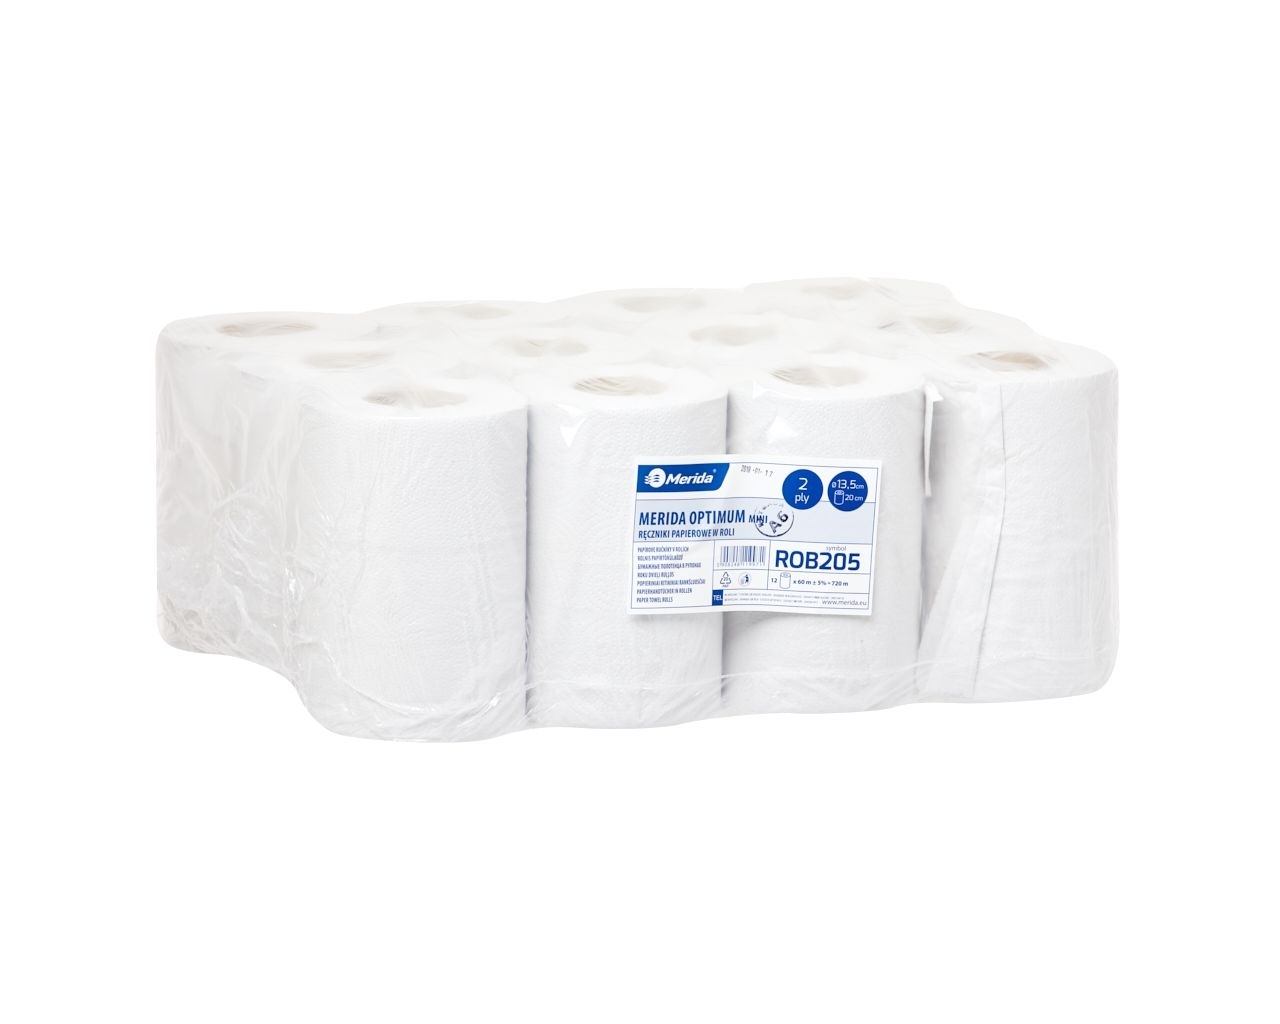 Ręczniki papierowe w roli MERIDA OPTIMUM MINI, białe, makulaturowe, dwuwarstwowe